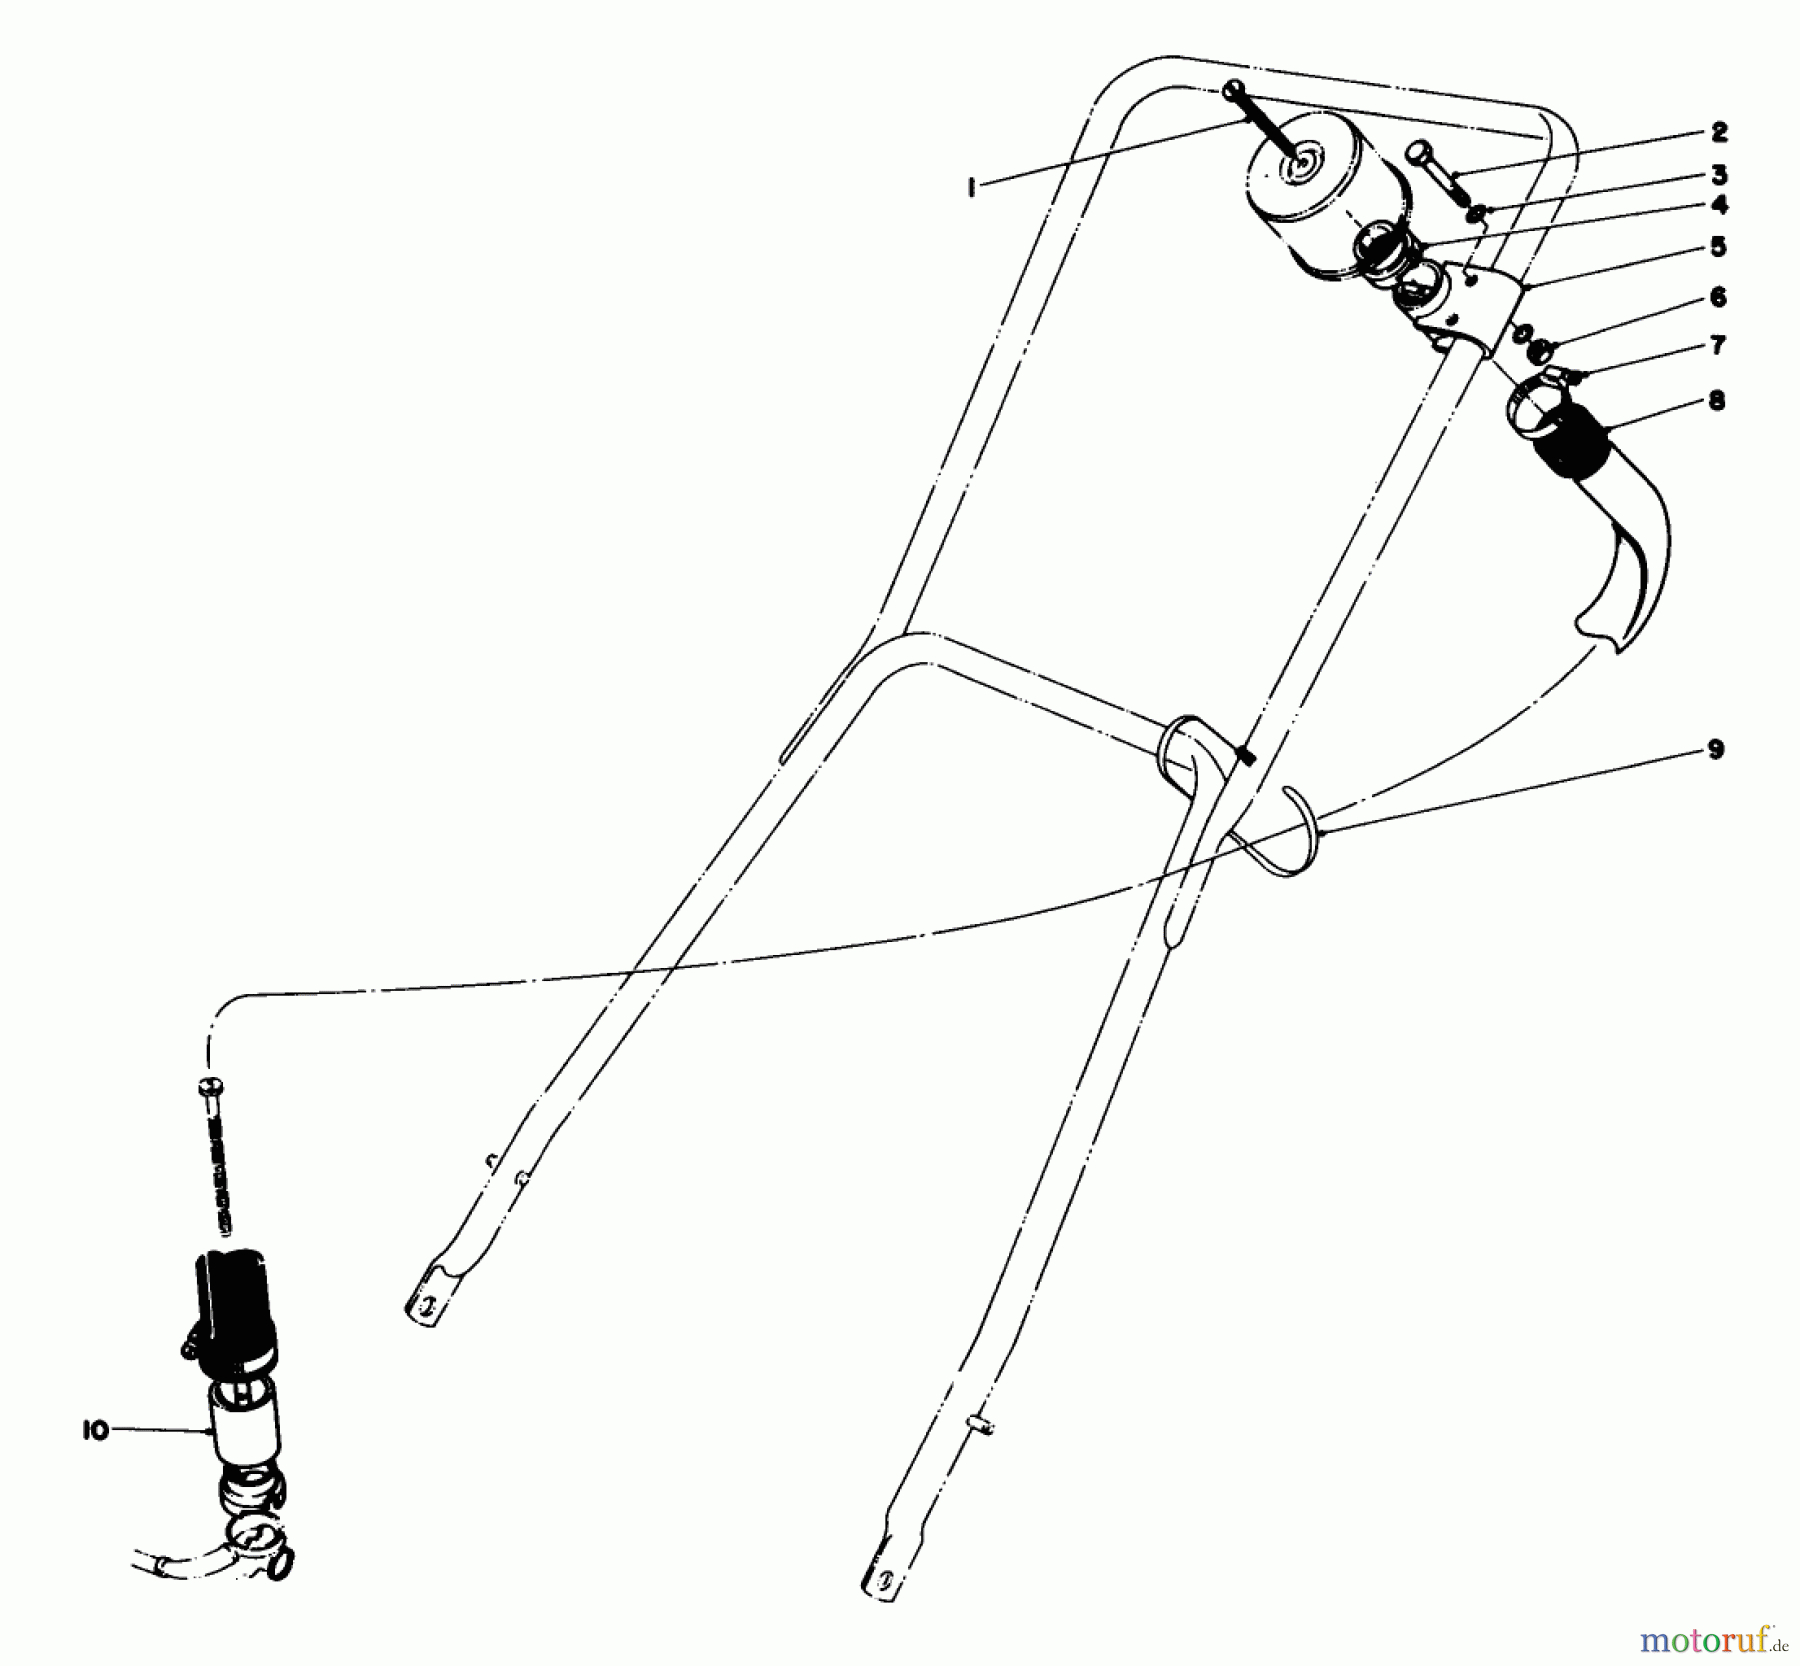  Toro Neu Mowers, Walk-Behind Seite 2 23022 - Toro Lawnmower, 1980 (0000001-0999999) REMOTE AIR CLEANER KIT NO. 28-0580 (OPTIONAL)